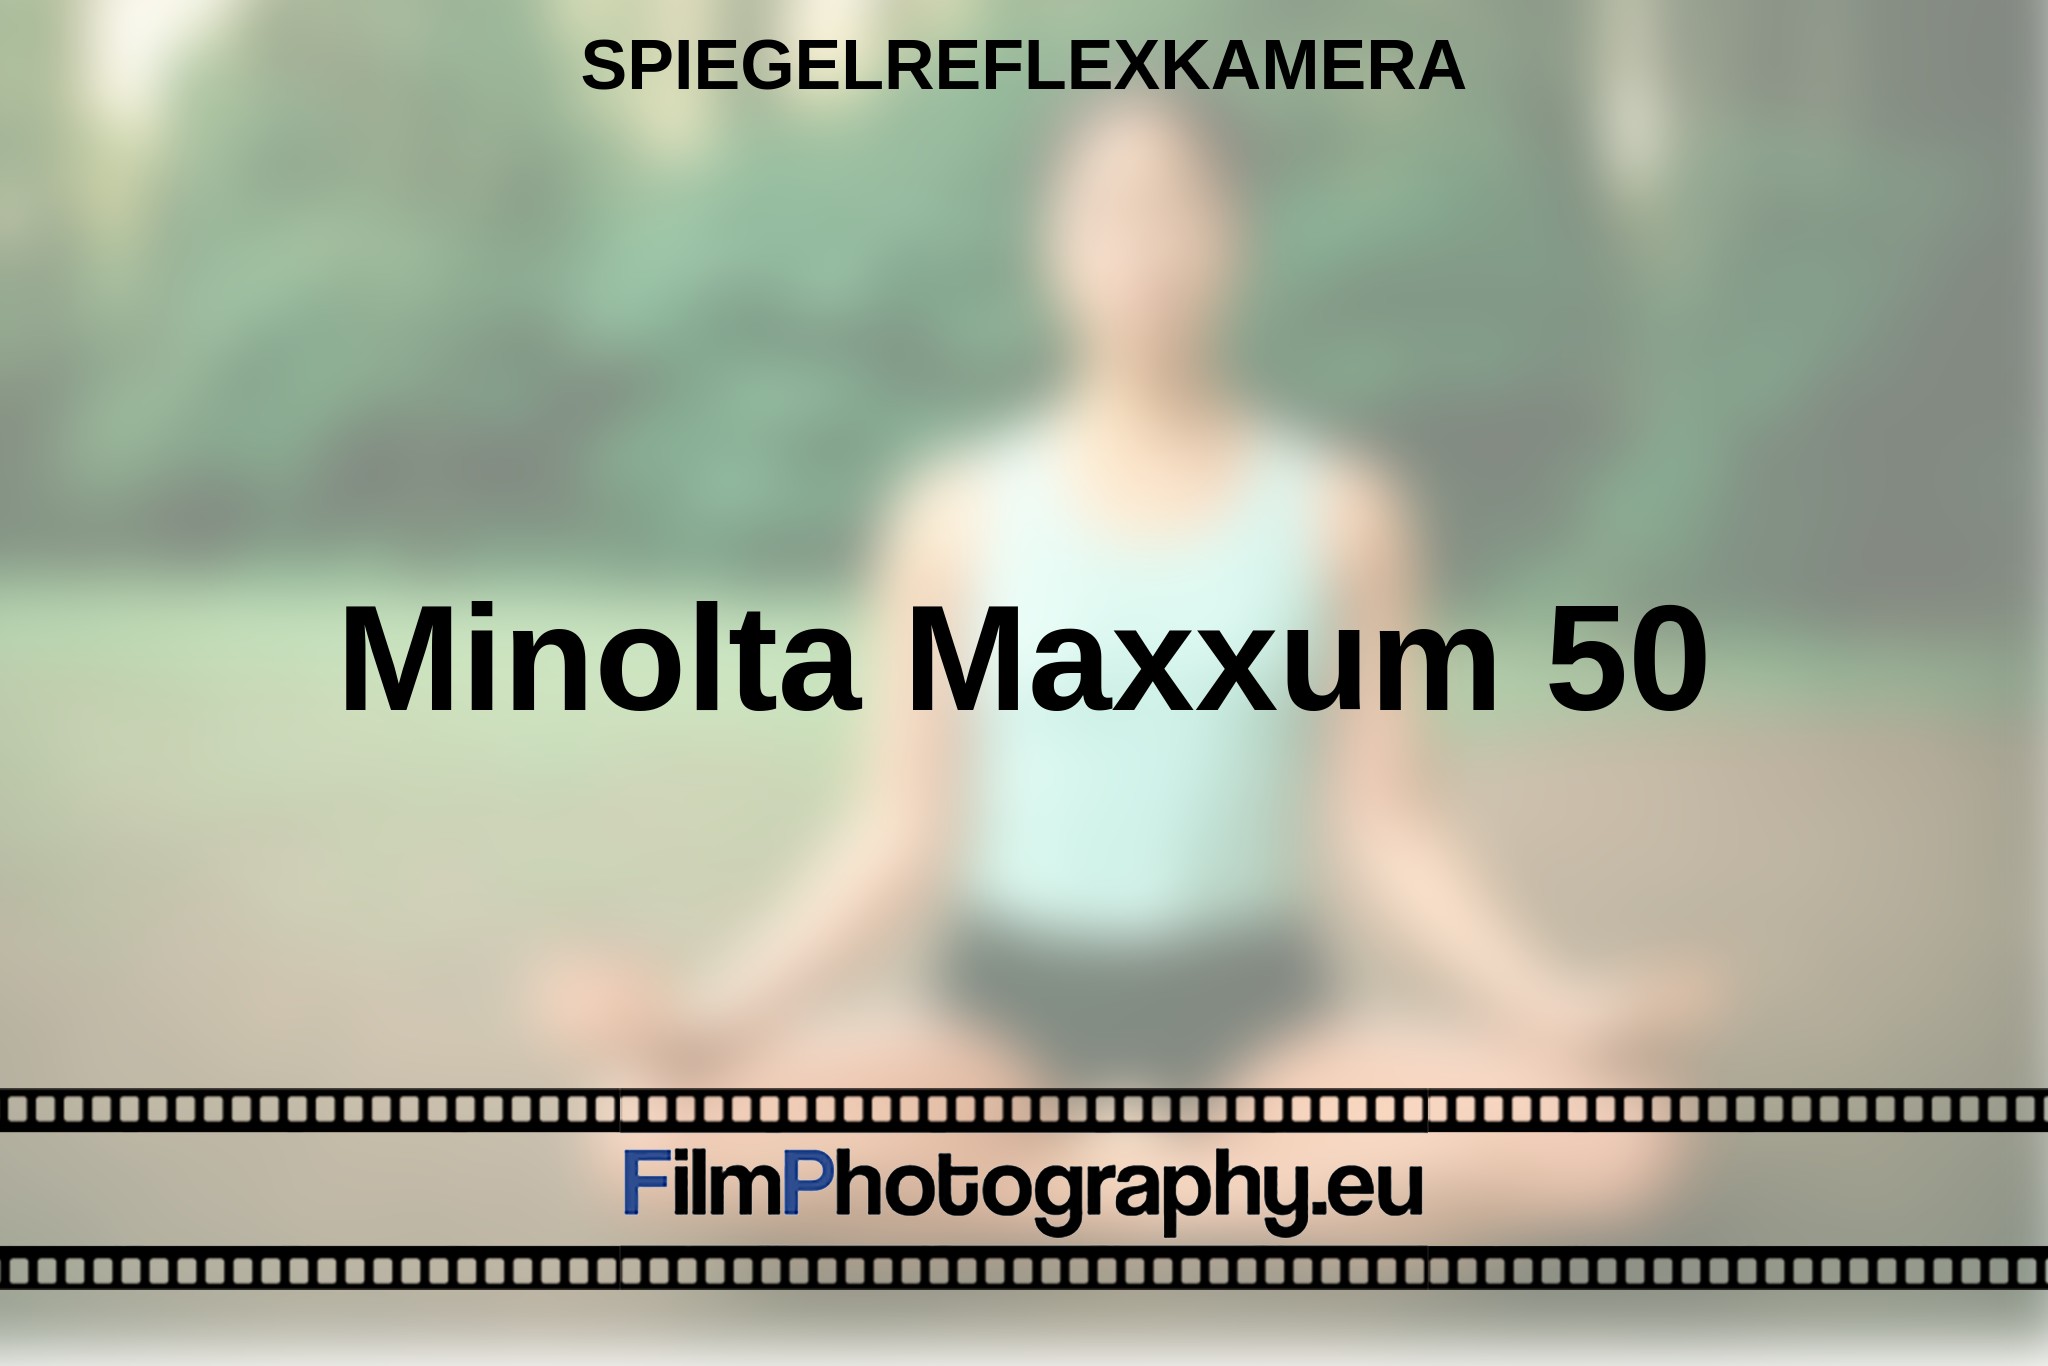 minolta-maxxum-50-spiegelreflexkamera-bnv.jpg